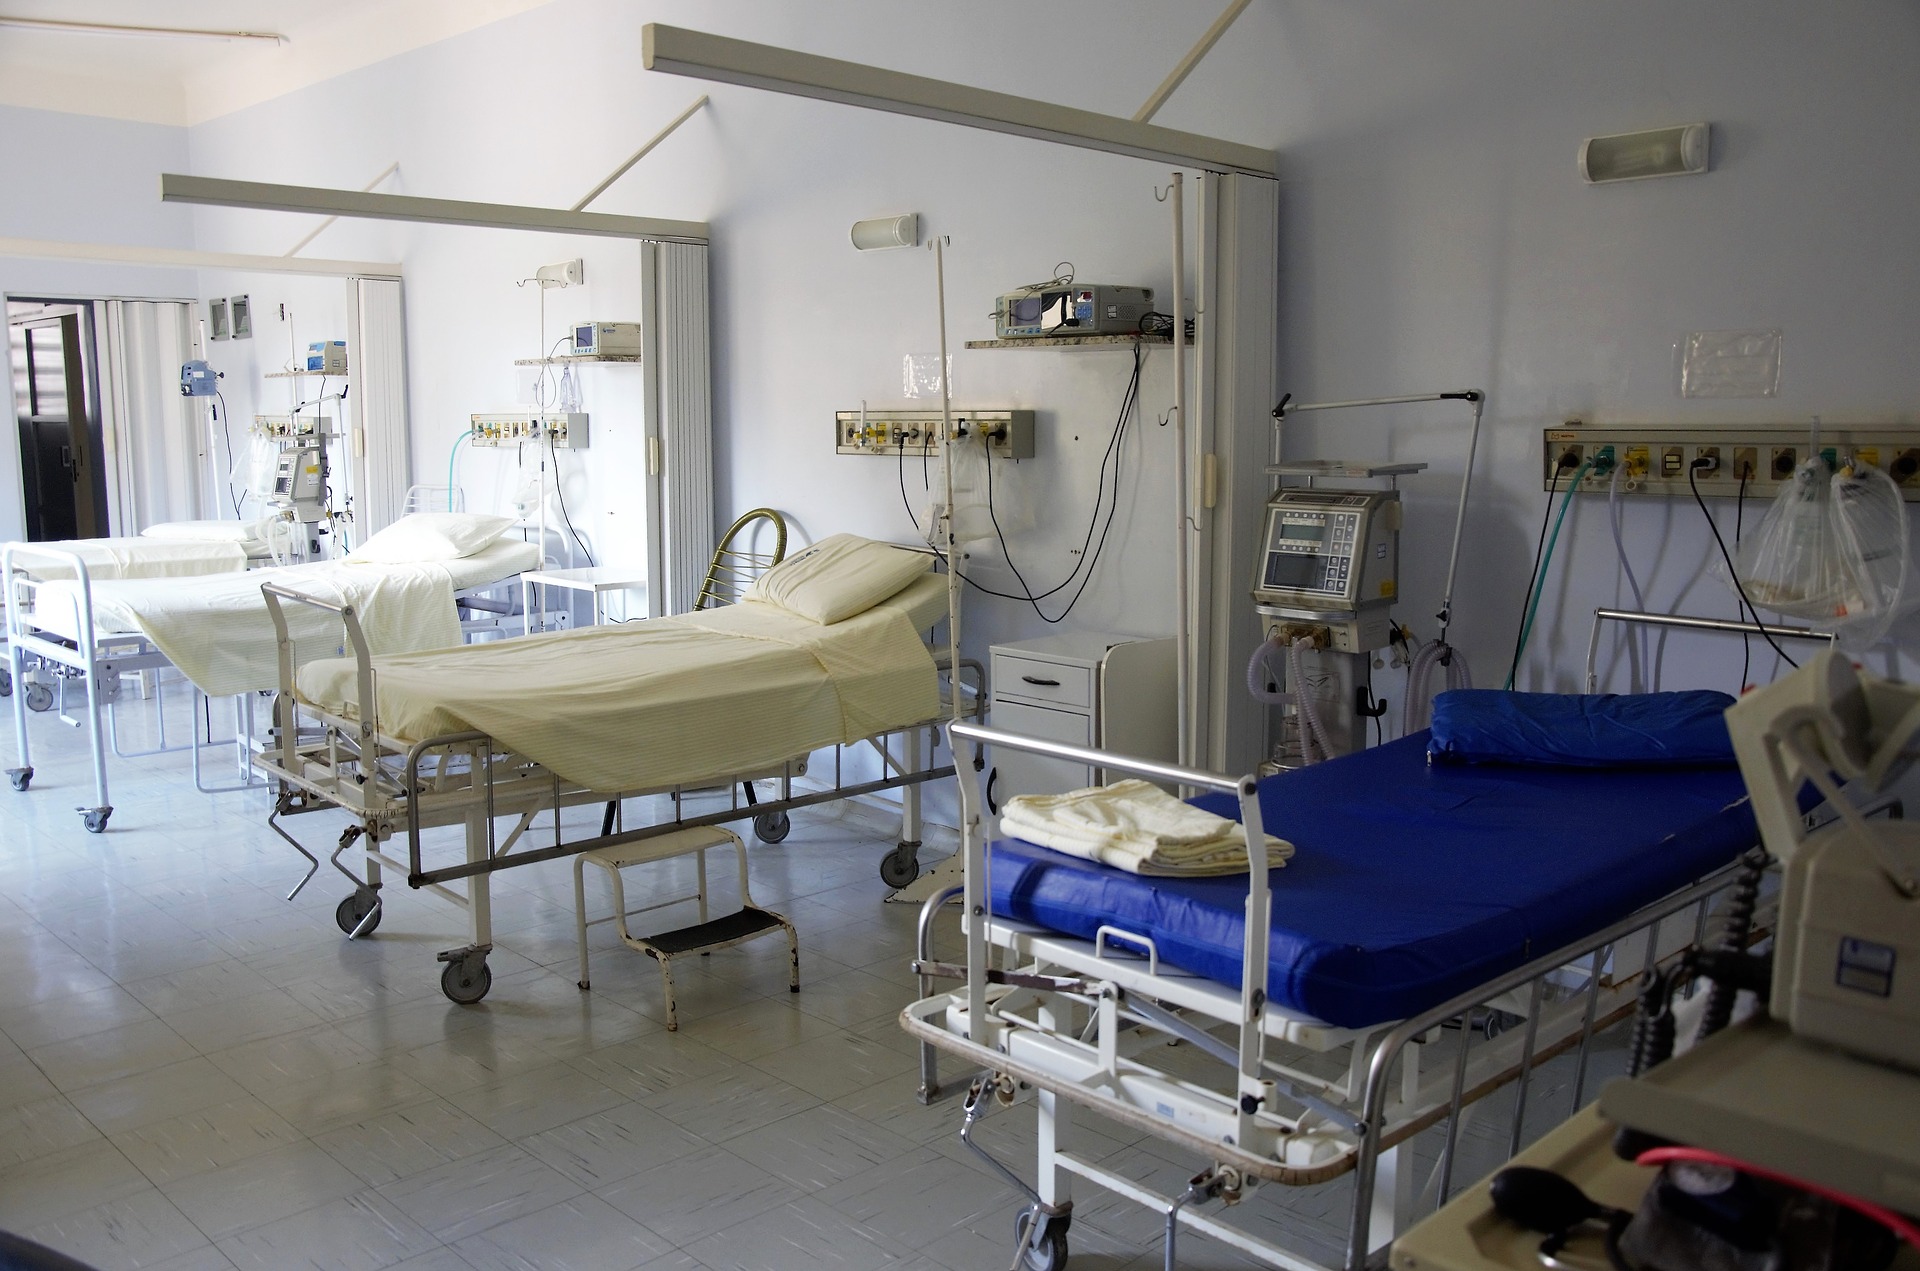 Αργολίδα: Πώς στηρίχτηκαν τα νοσοκομεία από το ΕΣΠΑ για να αντιμετωπίσουν τον κορωνοϊό